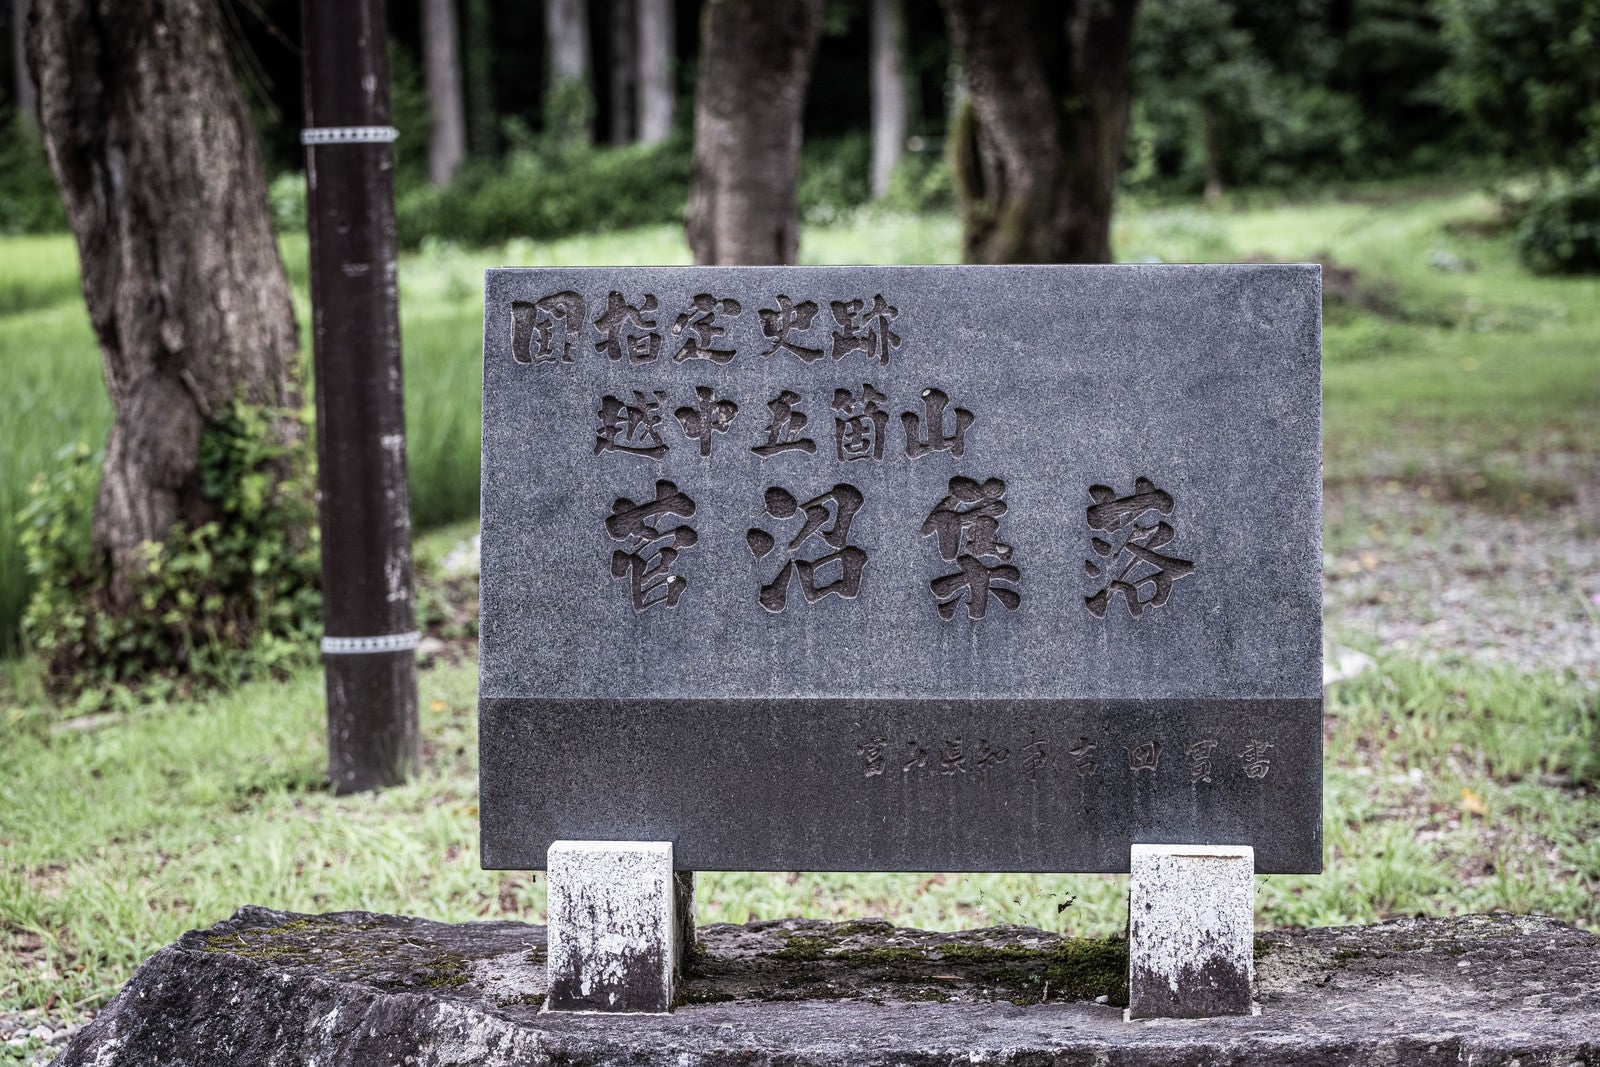 「国指定史跡越中五箇山菅沼集落の石碑」の写真